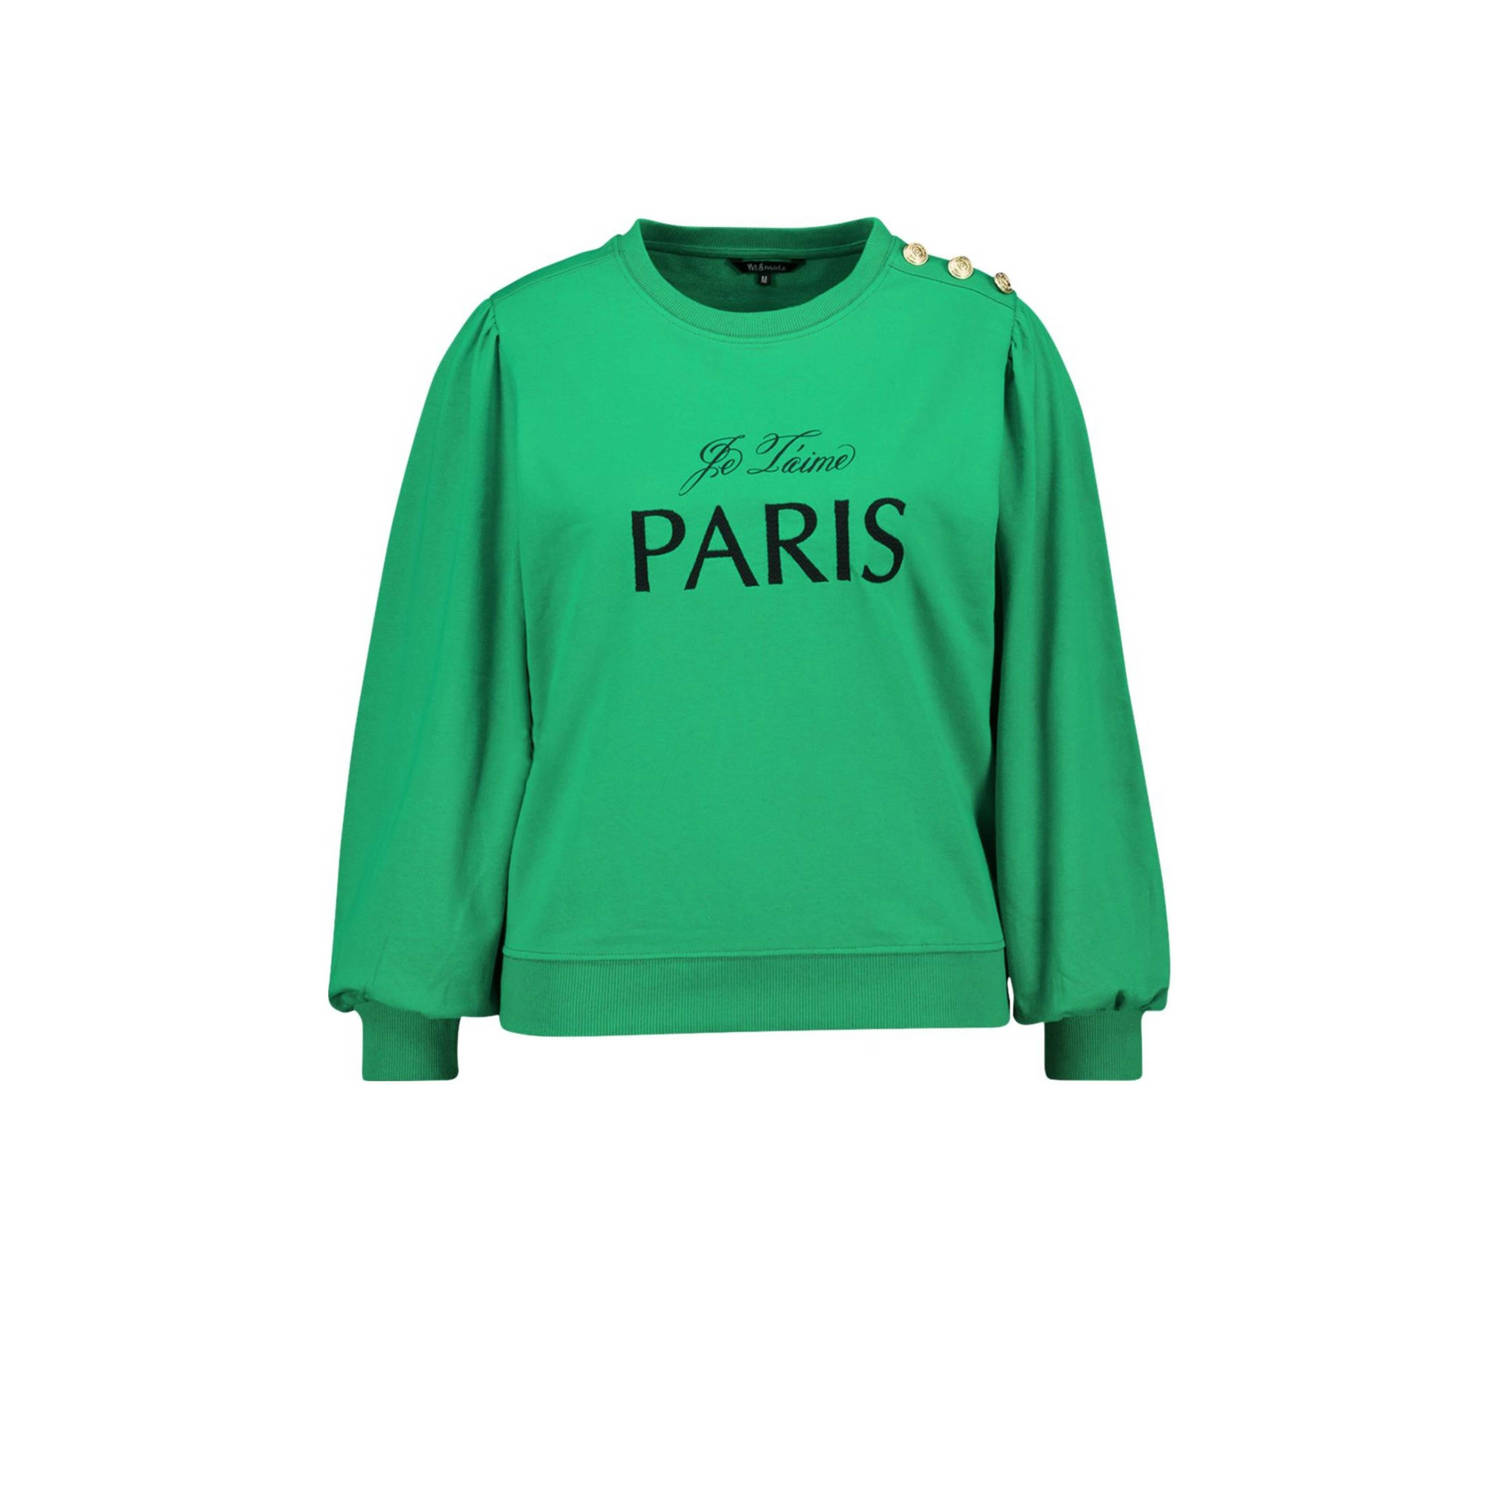 MS Mode sweater met tekst groen